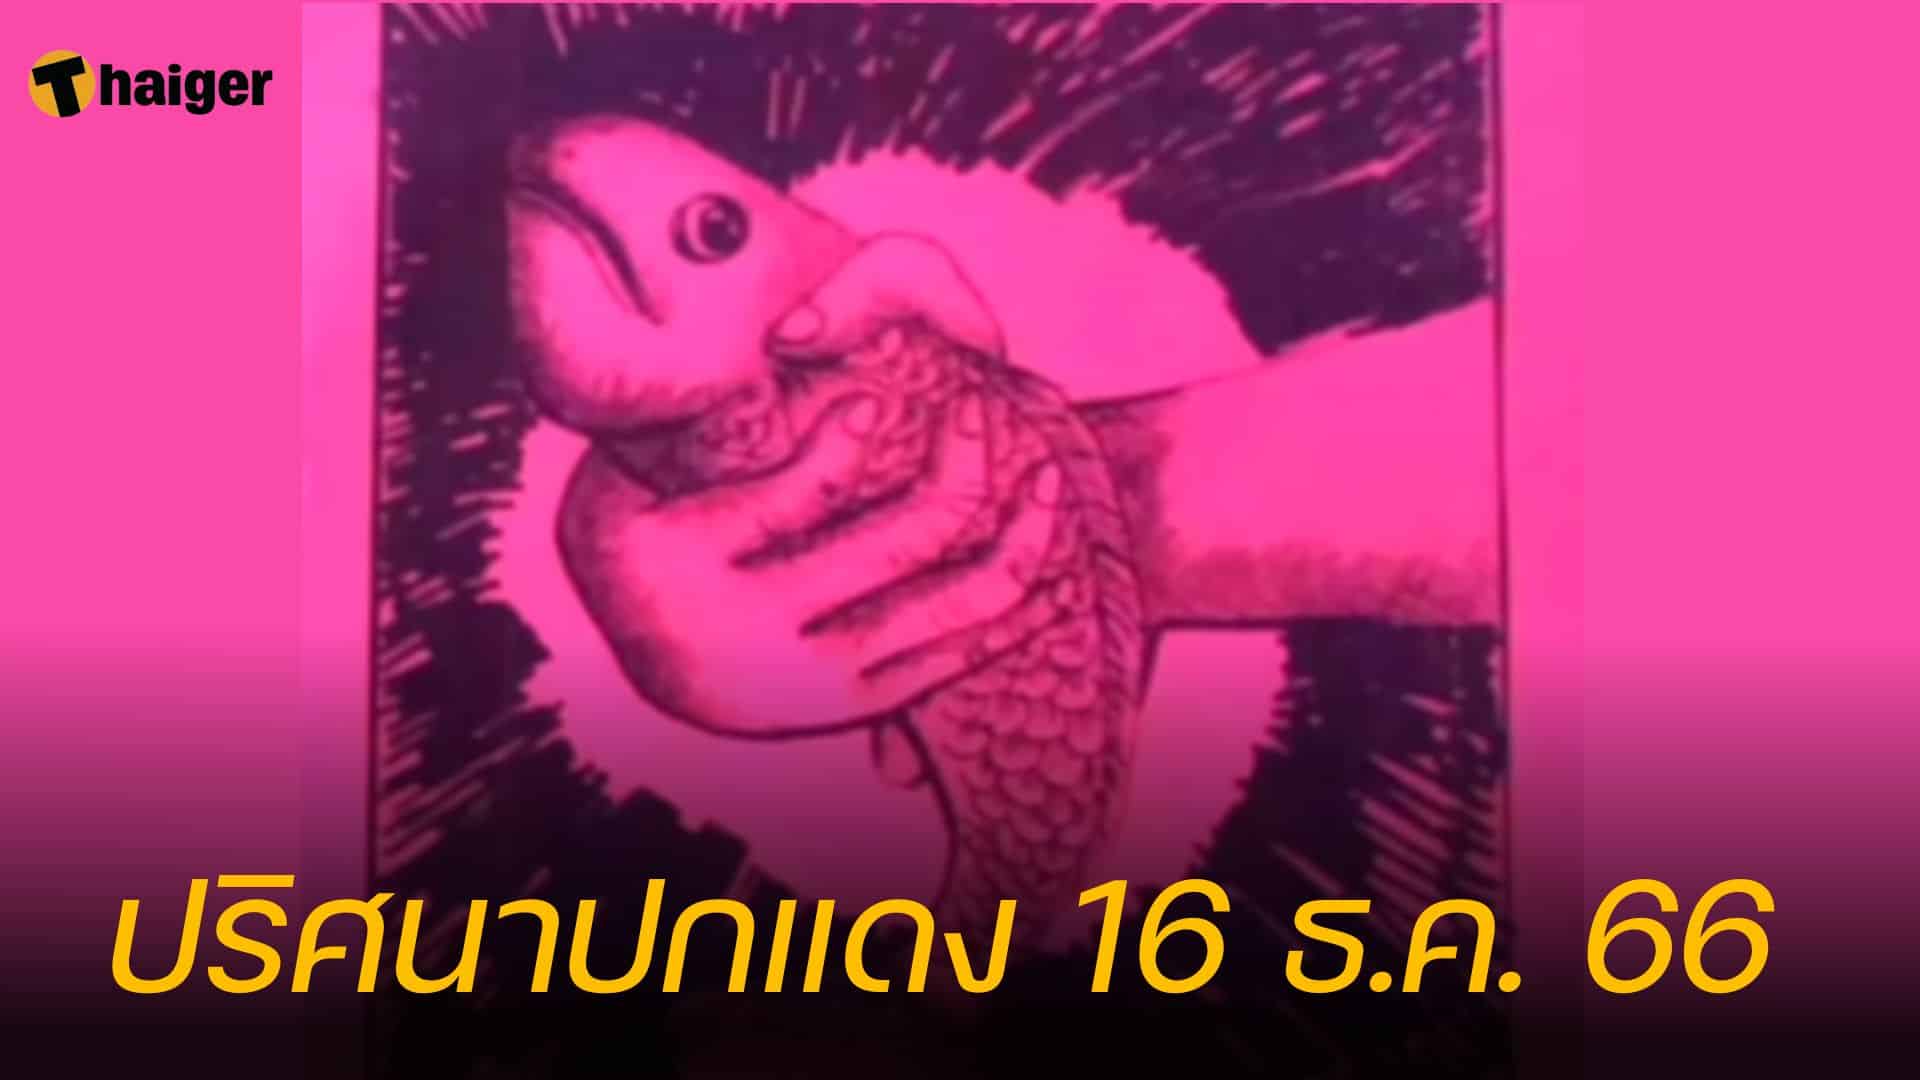 ส่องเลขเด็ด ปริศนาปกแดง แนวทางหวยโค้งสุดท้าย 16/12/66 | Thaiger ข่าวไทย